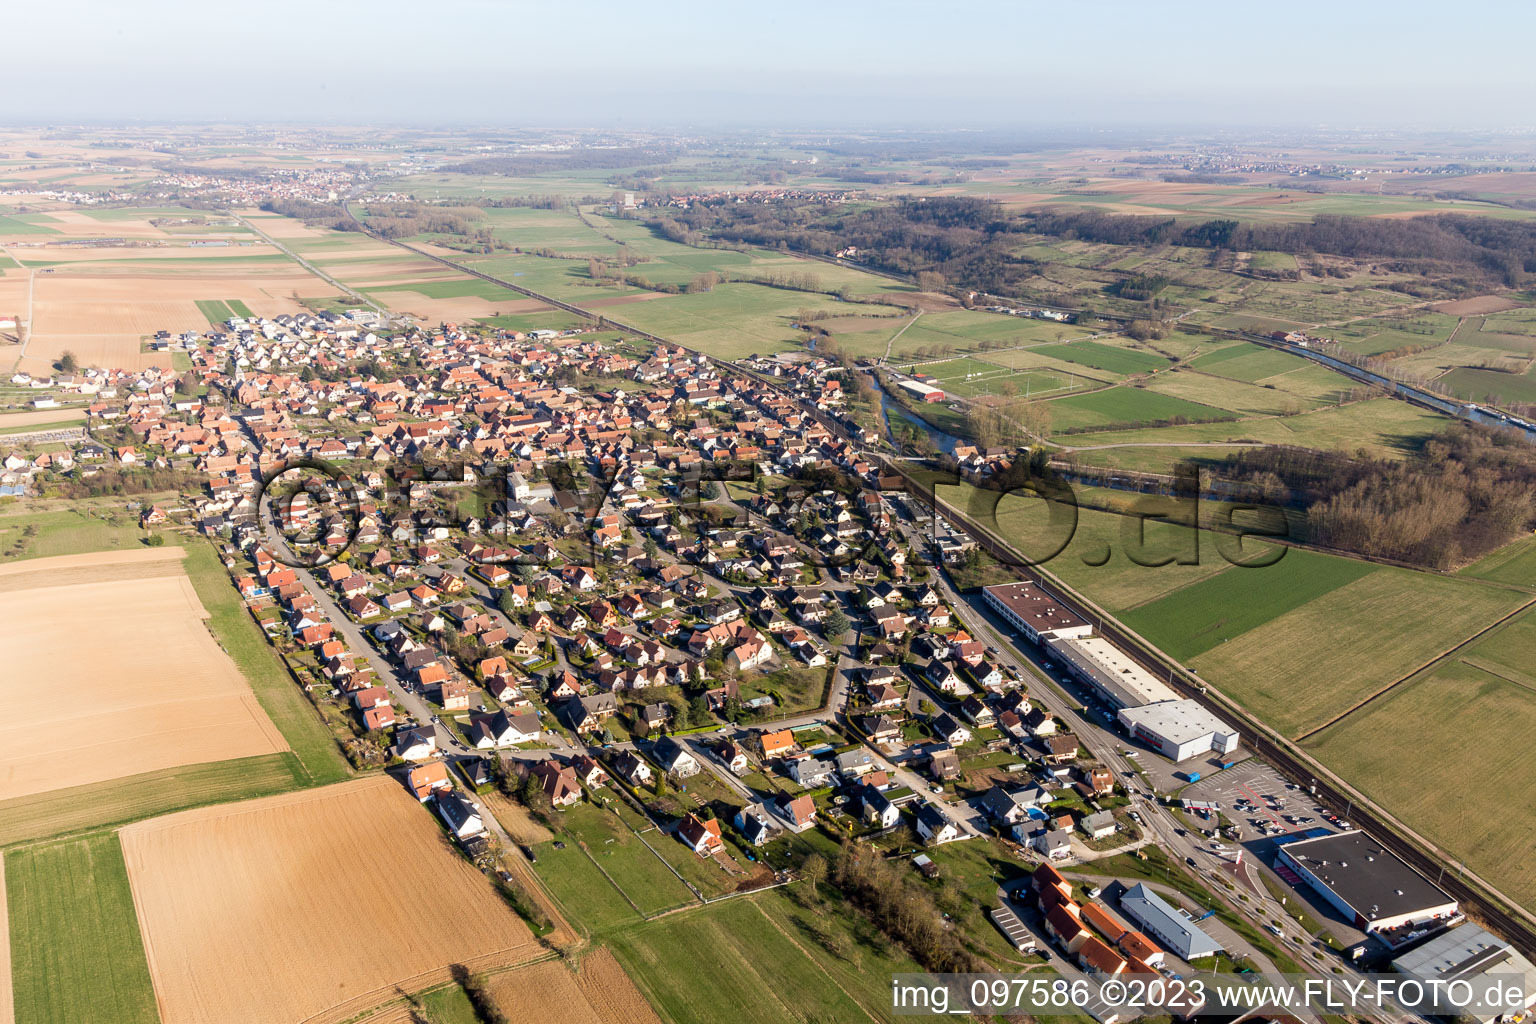 Hochfelden dans le département Bas Rhin, France hors des airs